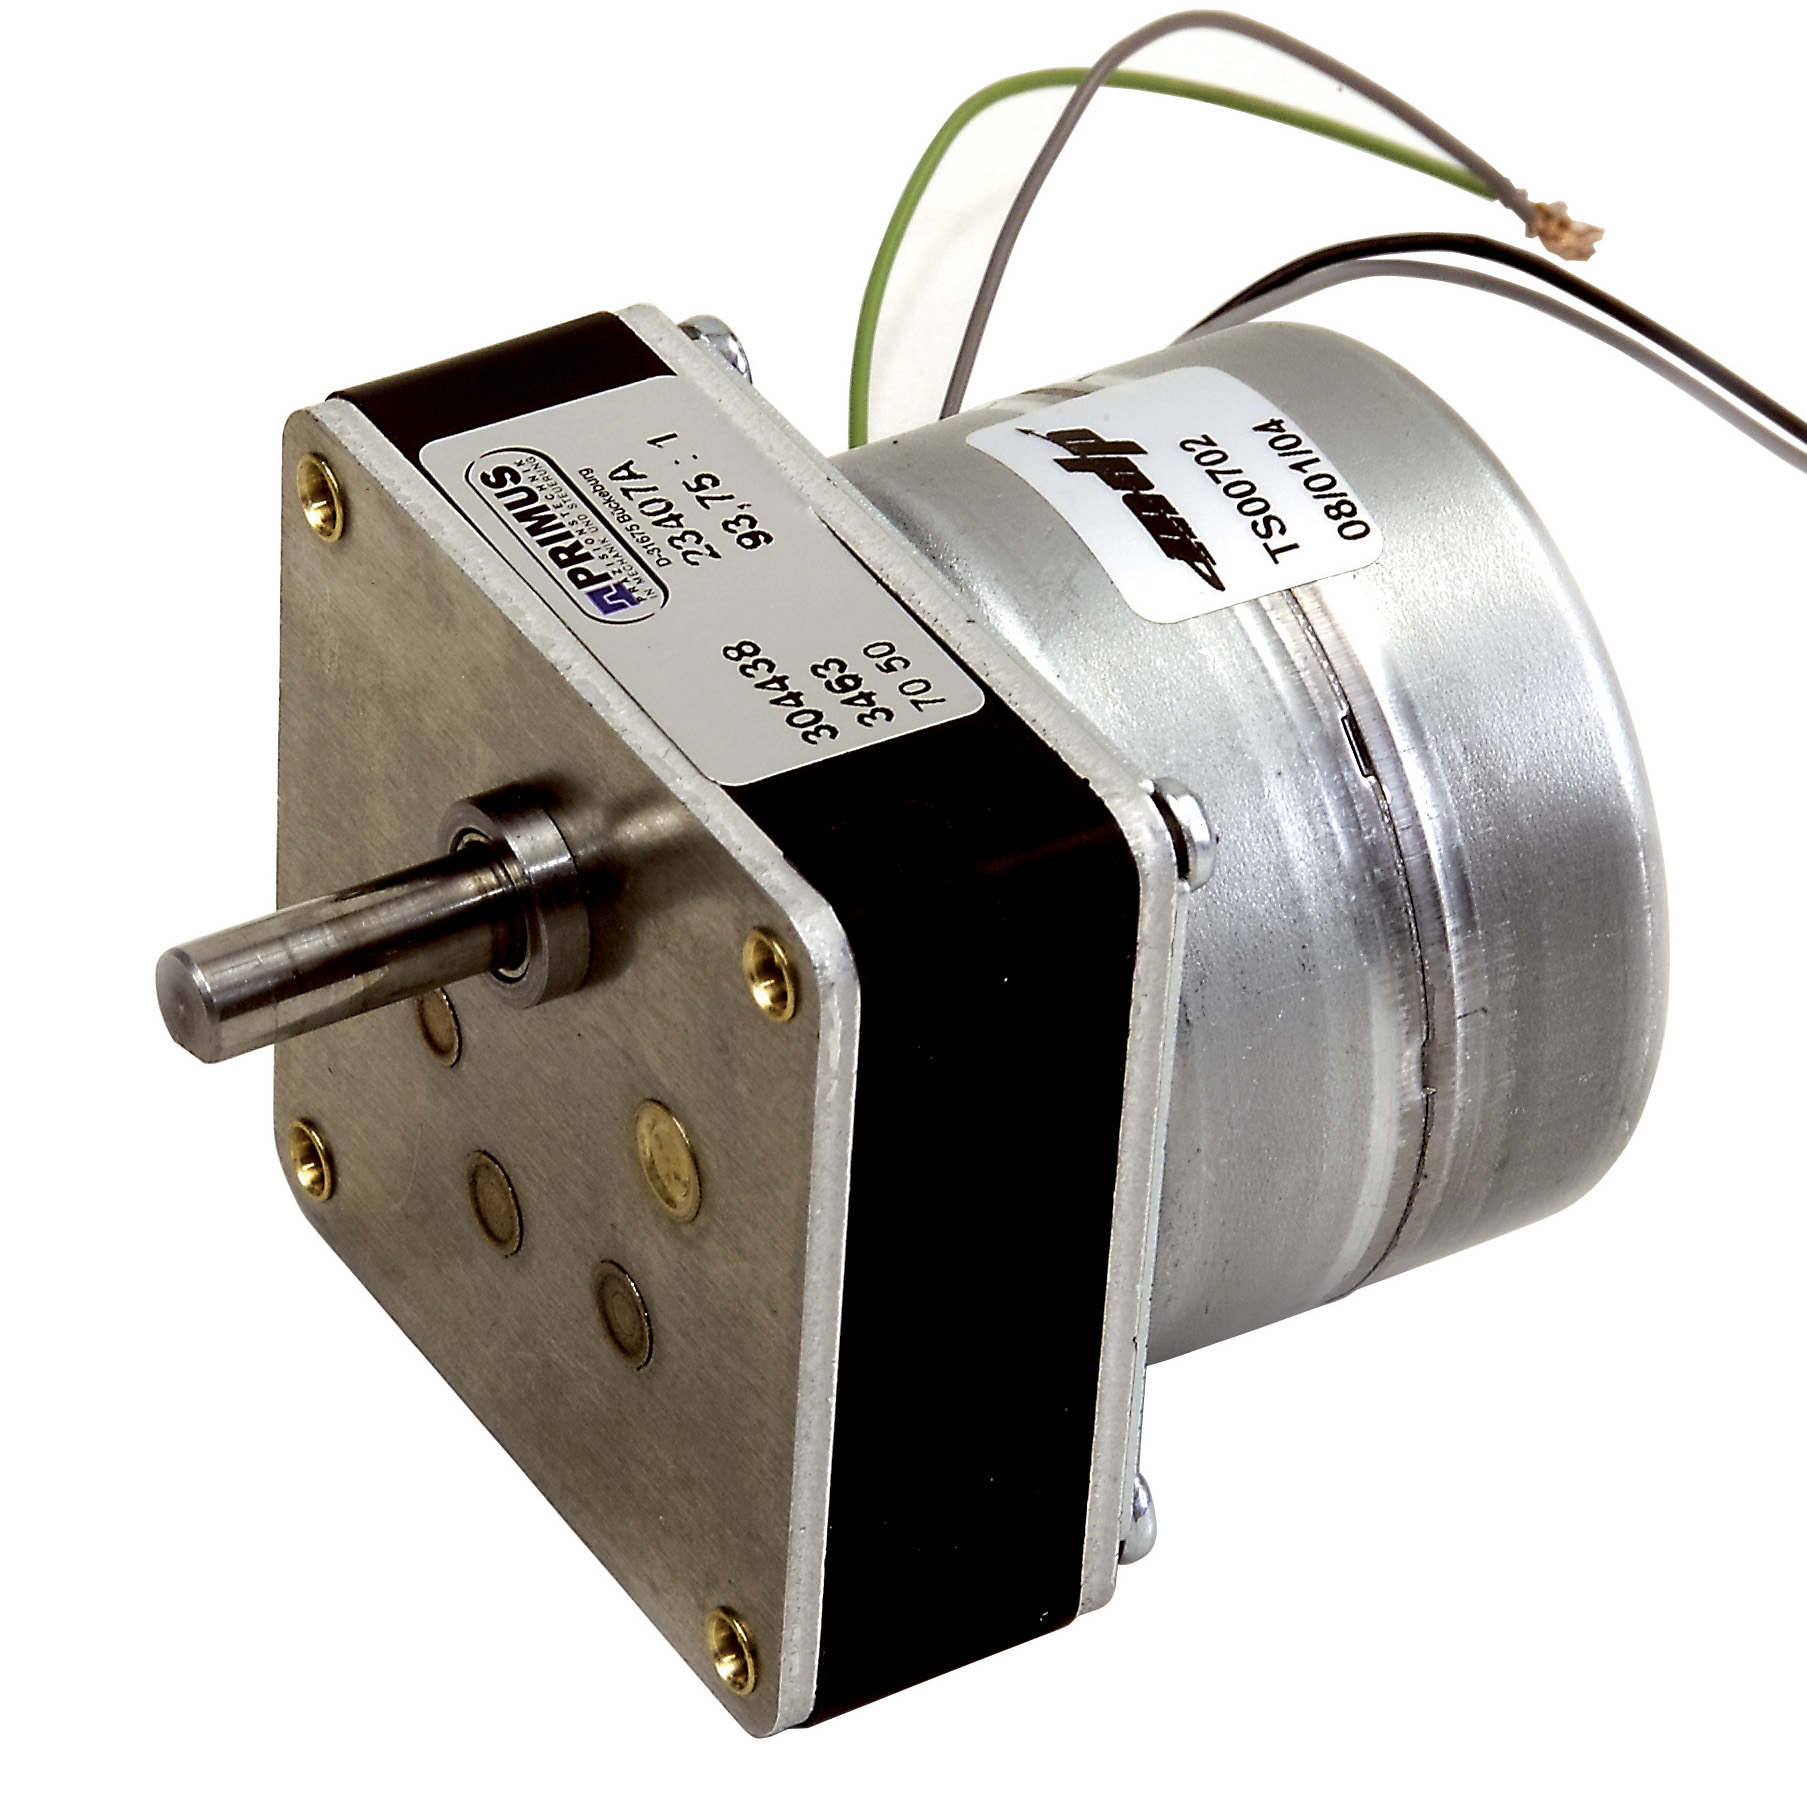 Motoriduttore AC sincrono - da 1.3 a 6Nm - da 0.5 a 31 - 230V